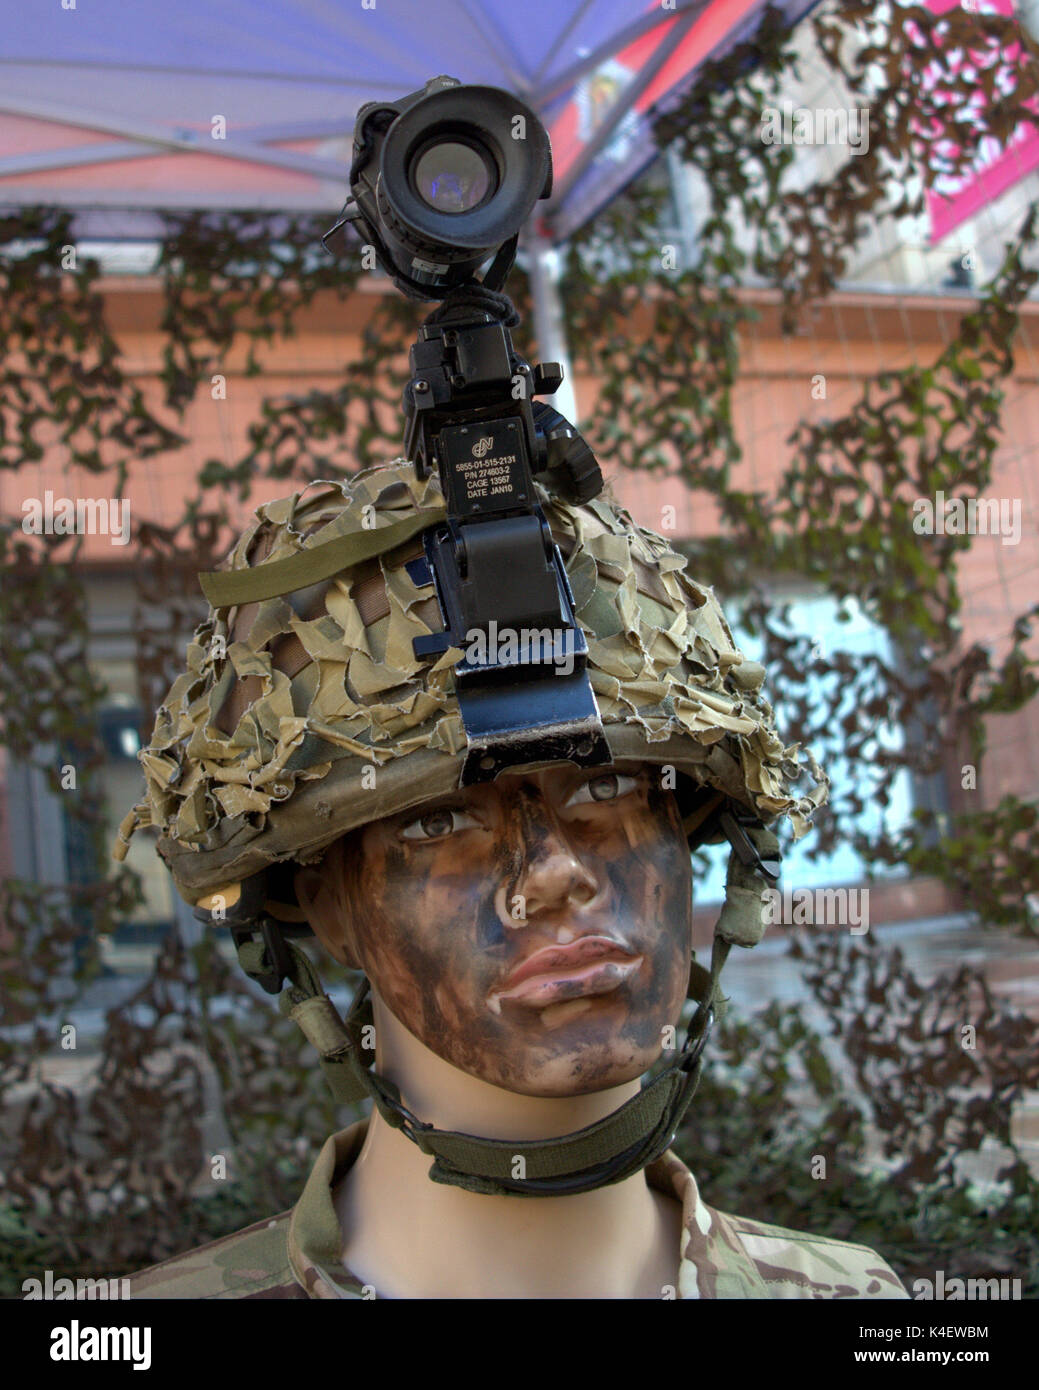 Maniquí de reclutamiento del ejército con cámara de casco cam street mostrar replicando función de combate Foto de stock